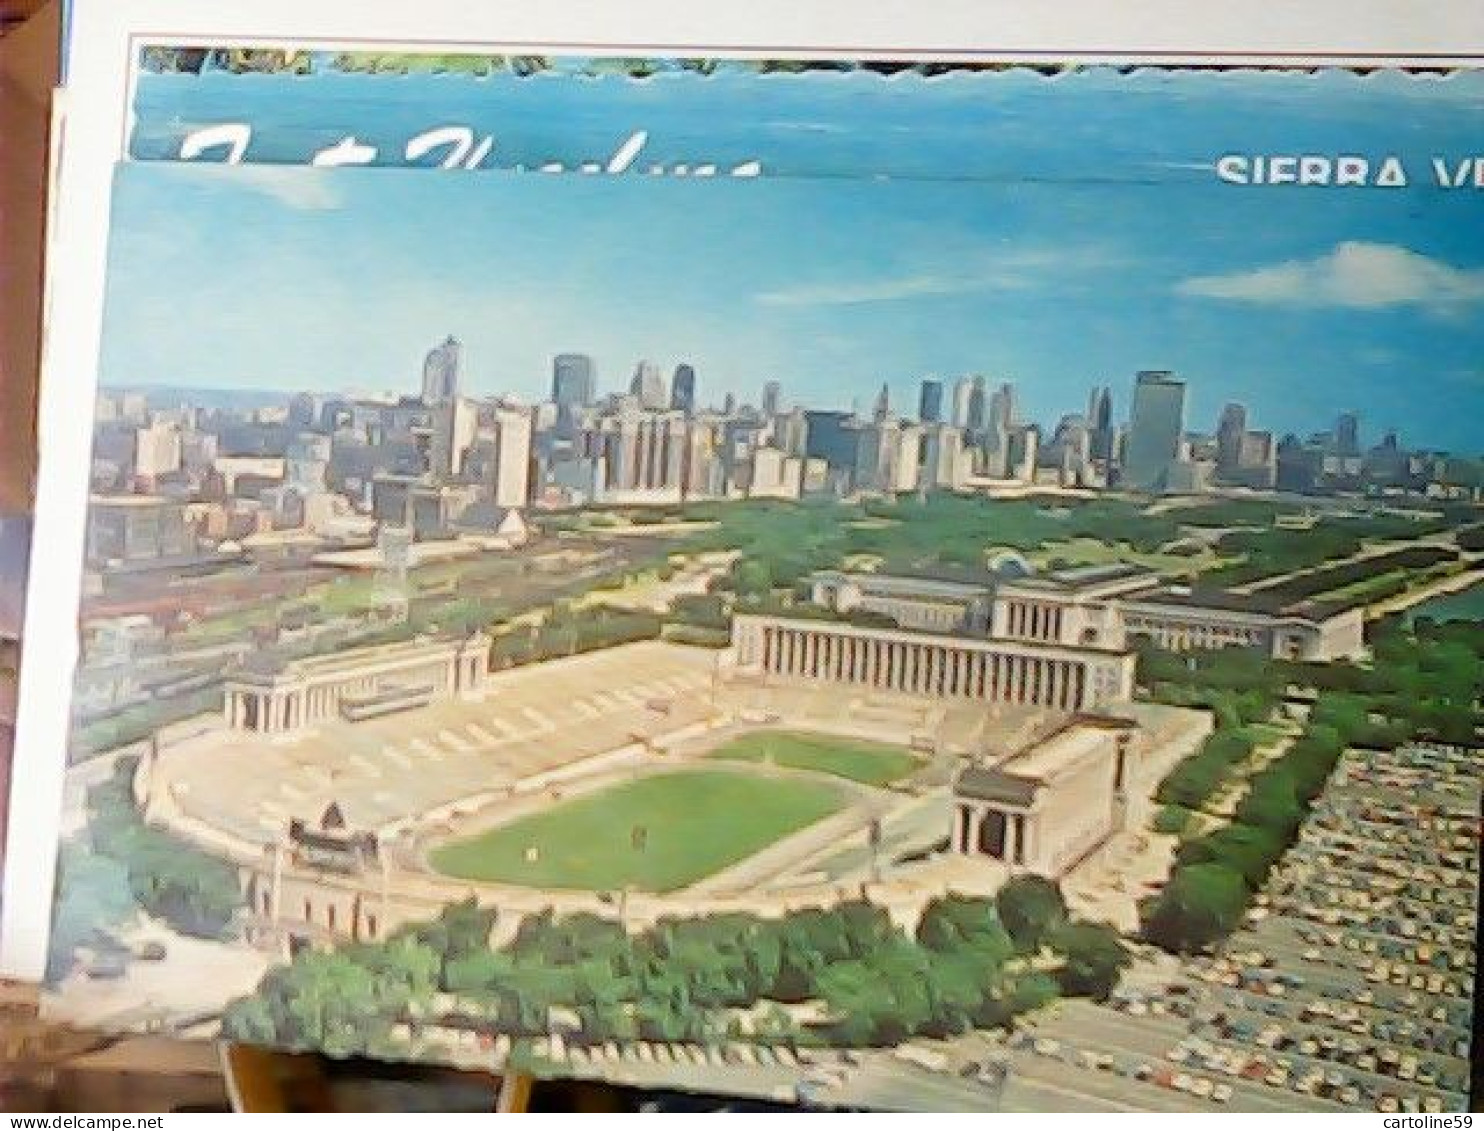 Chicago - Stadium - Soldier\'s Field - STADIO ESTADE N1964 JV6112 - Chicago